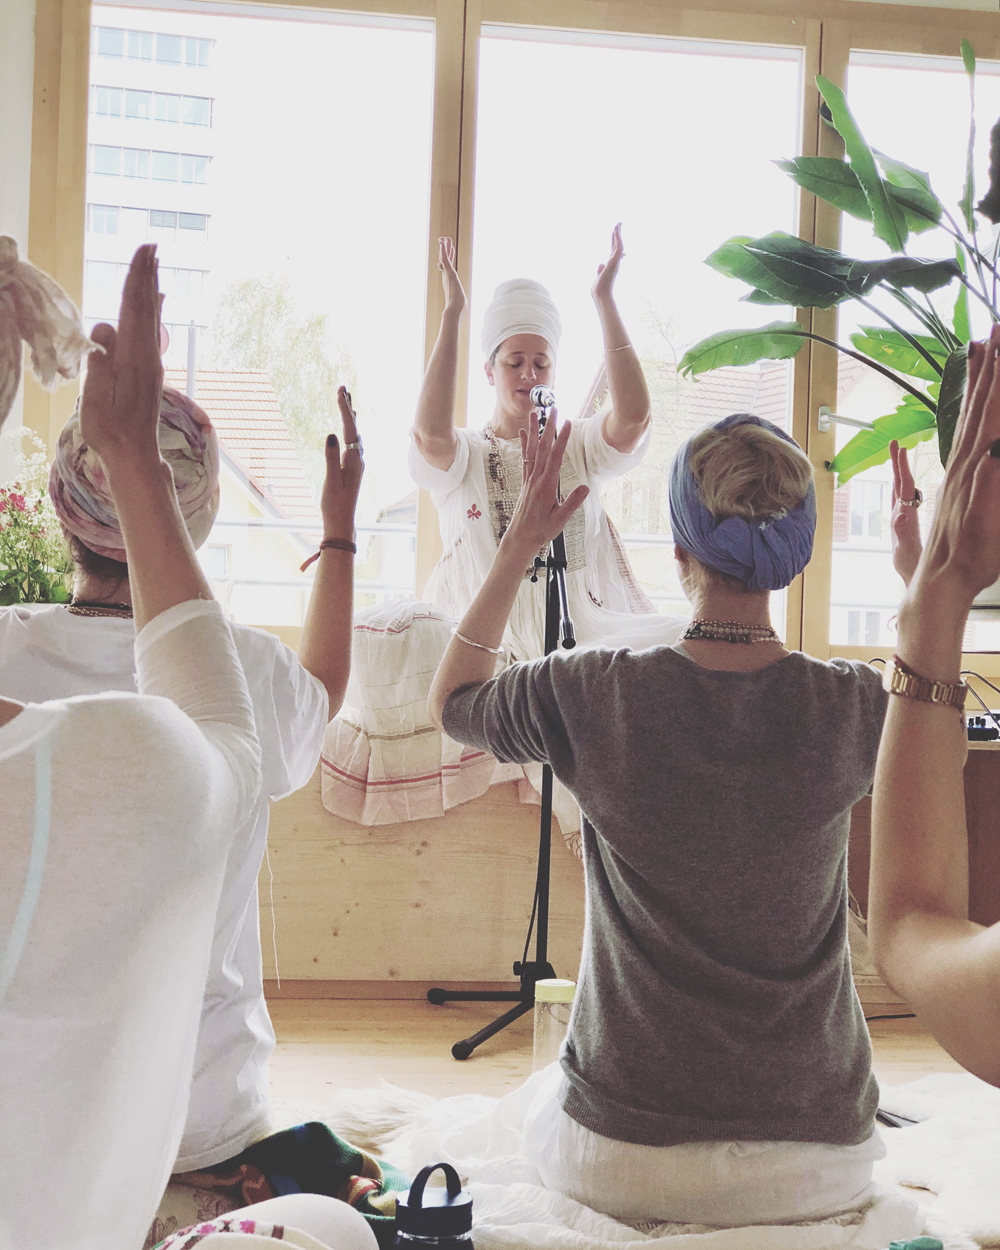 Bloggerin Katrin Roth über ihre erste Kundalini-Yogastunde bei Guru Jagat.